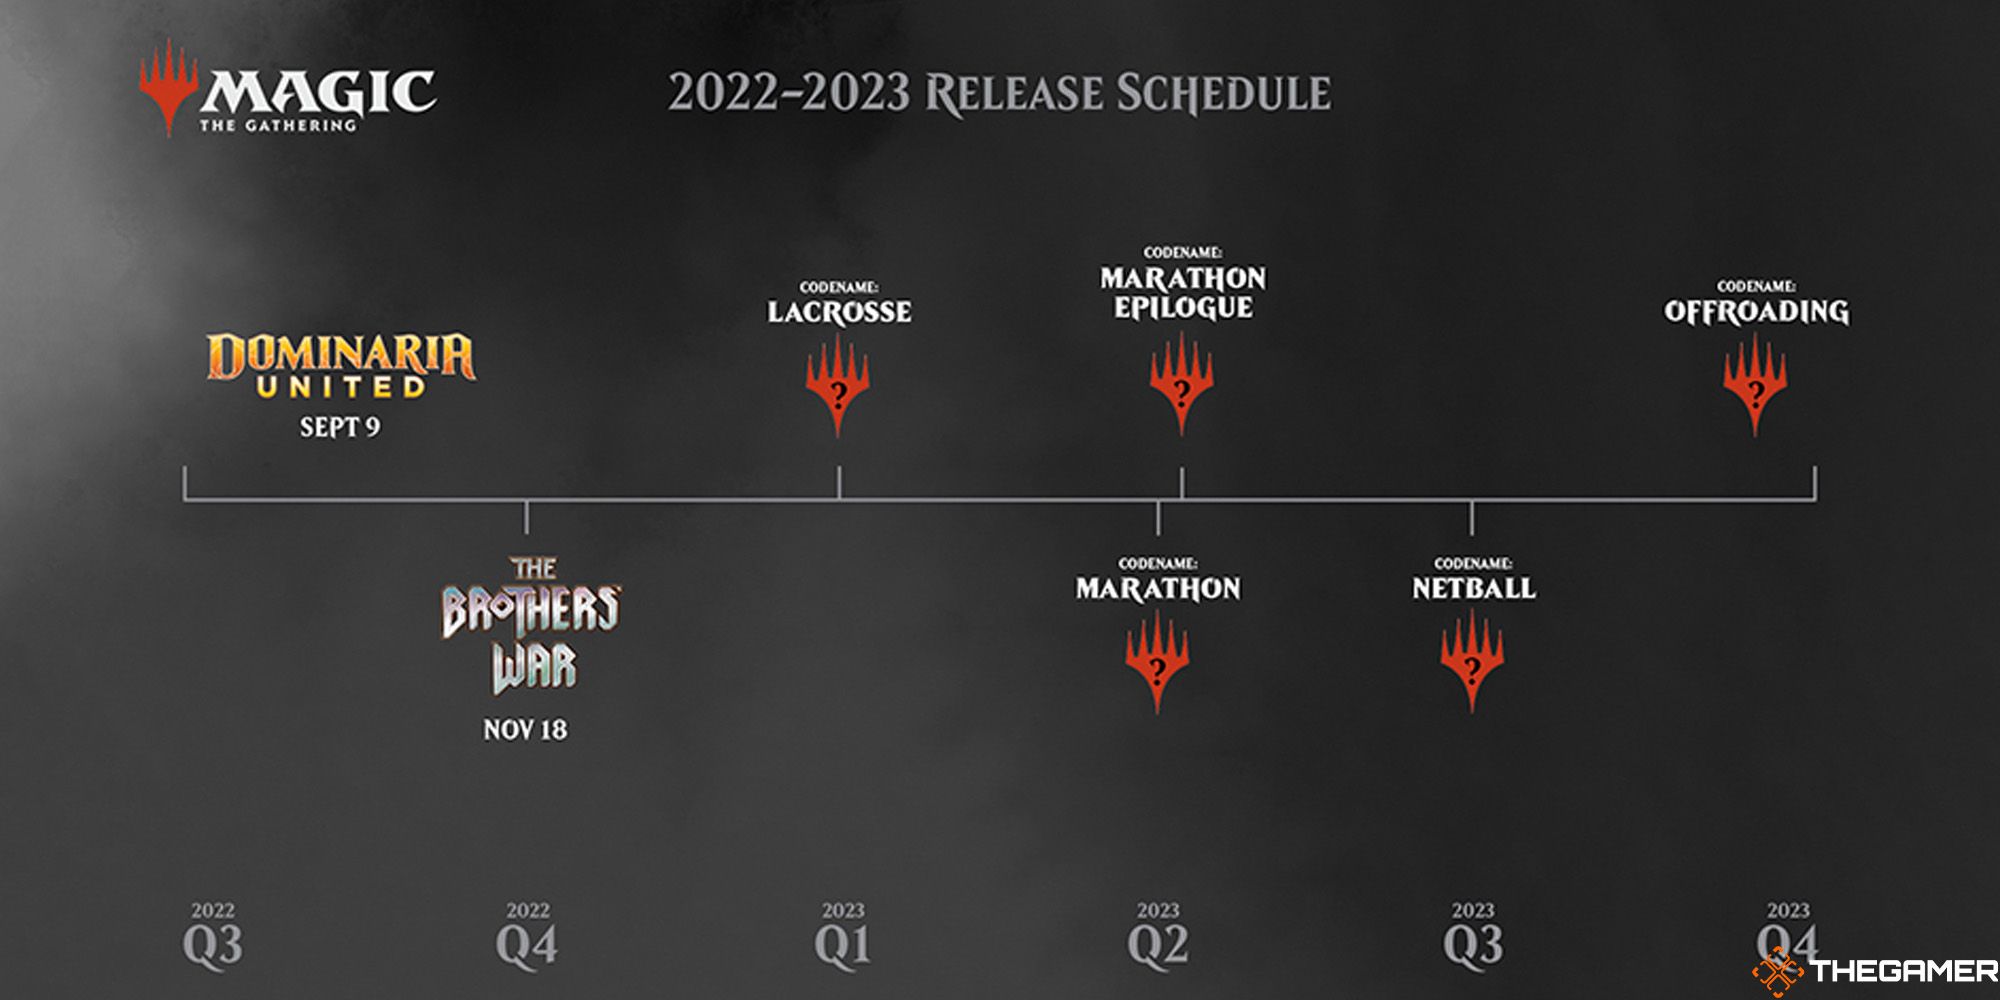 2023 Release Schedule